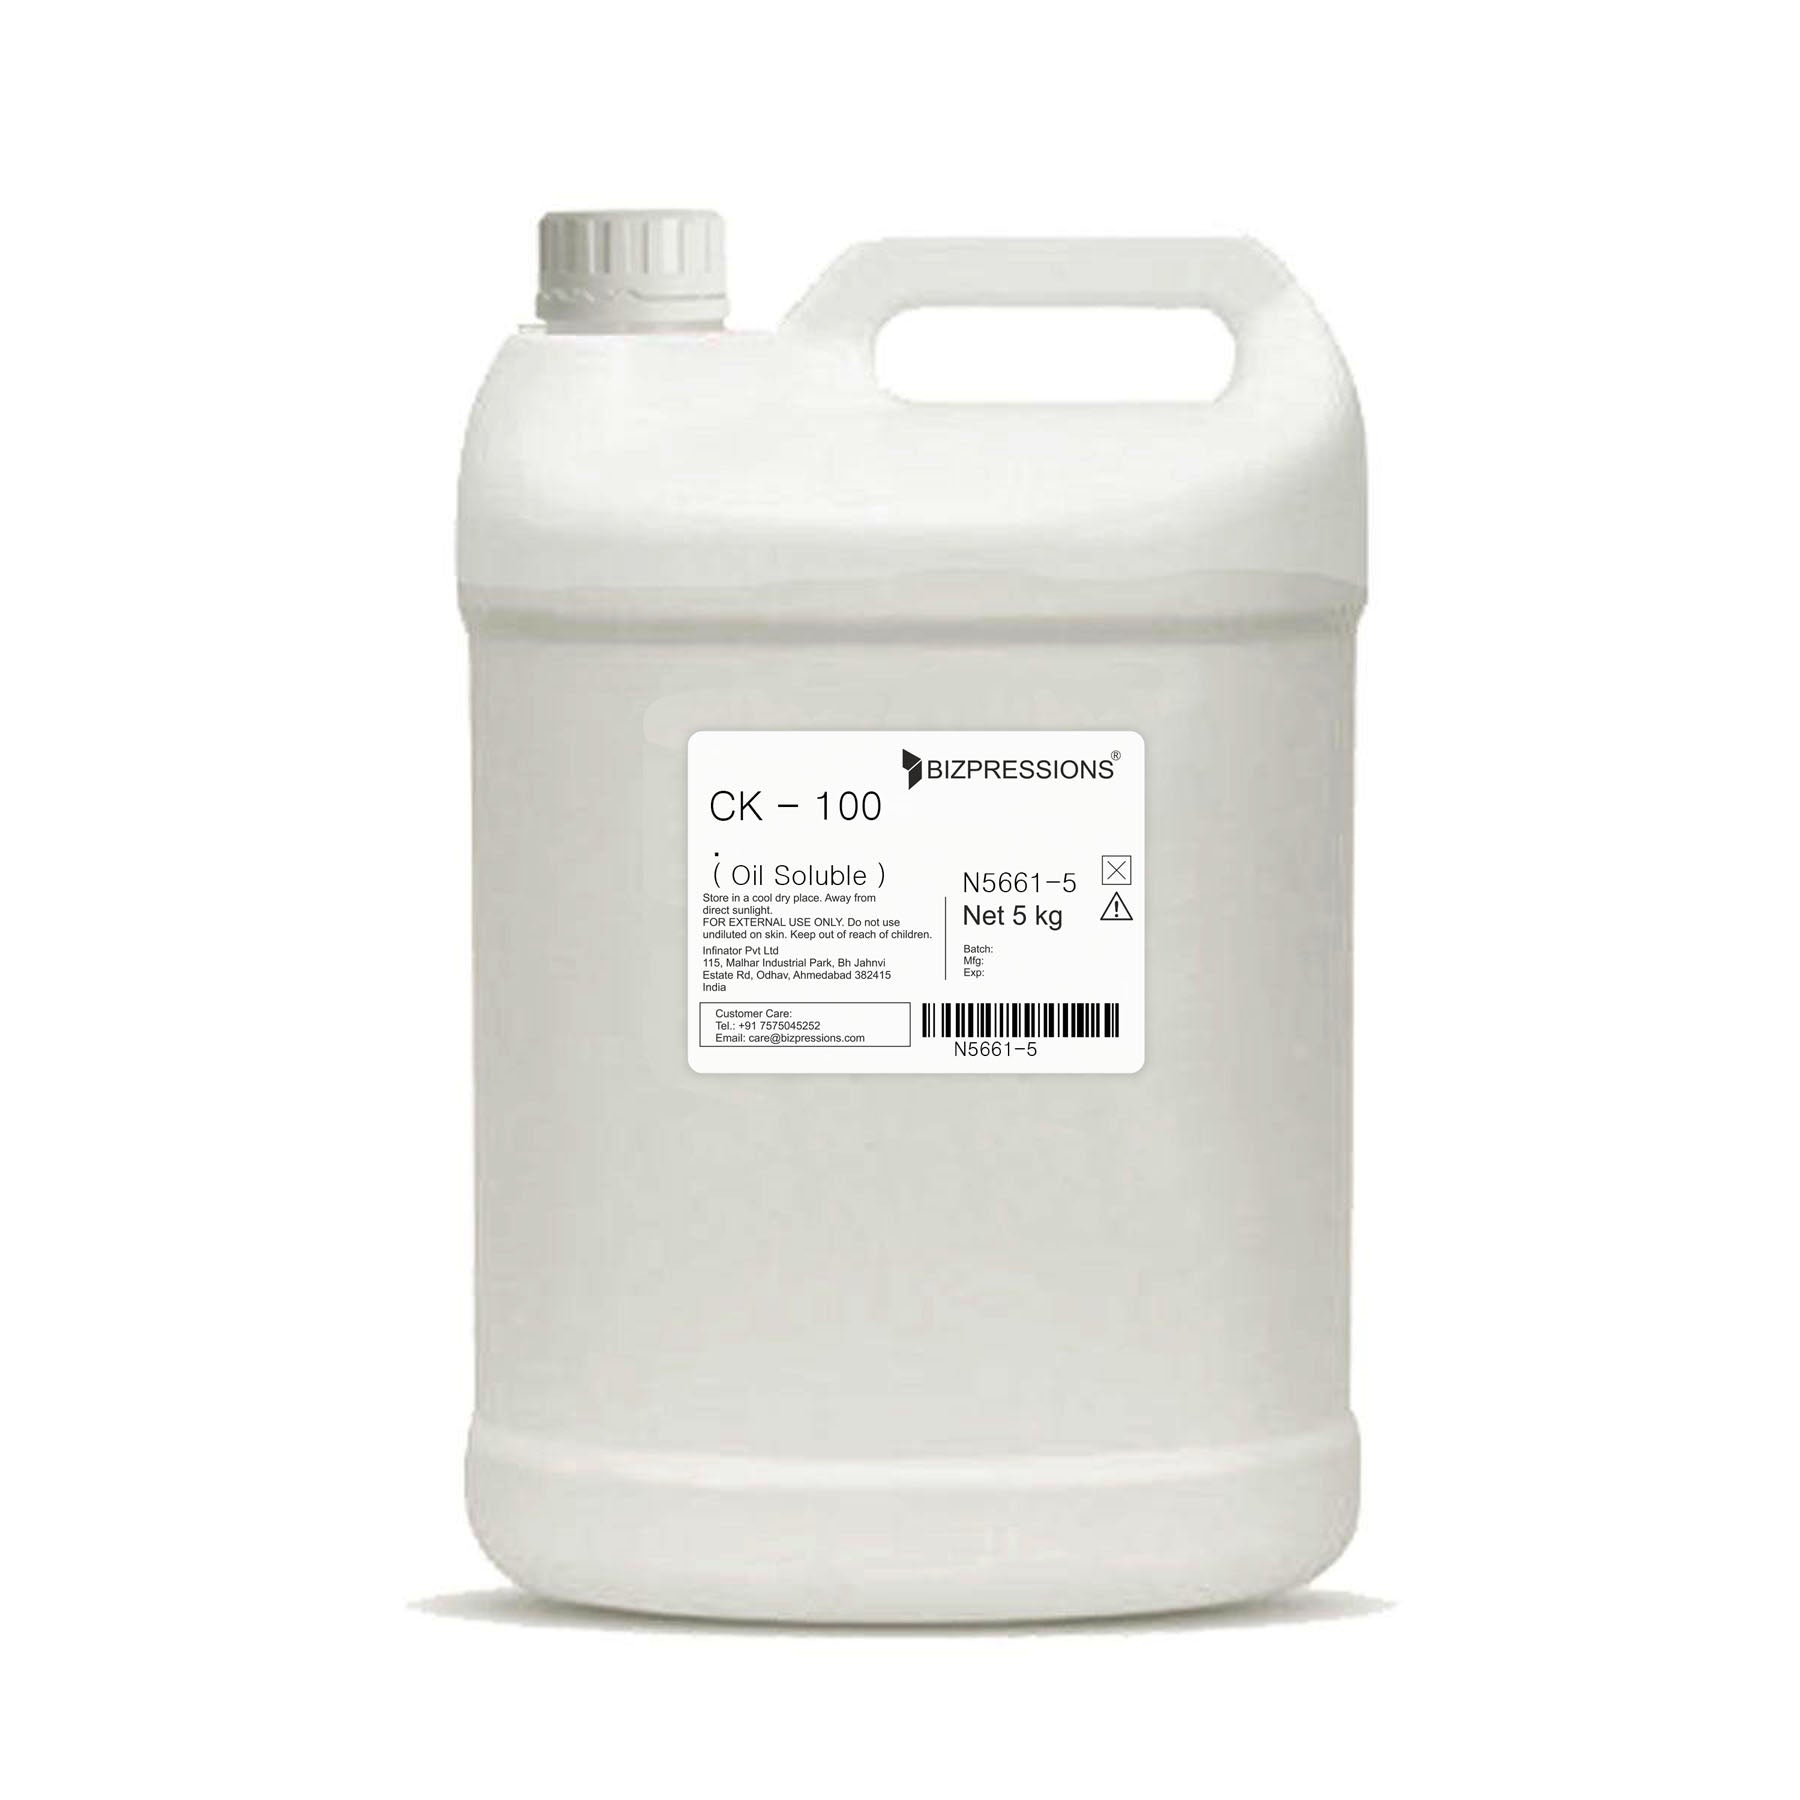 CK - 100 - Fragrance ( Oil Soluble ) - 5 kg